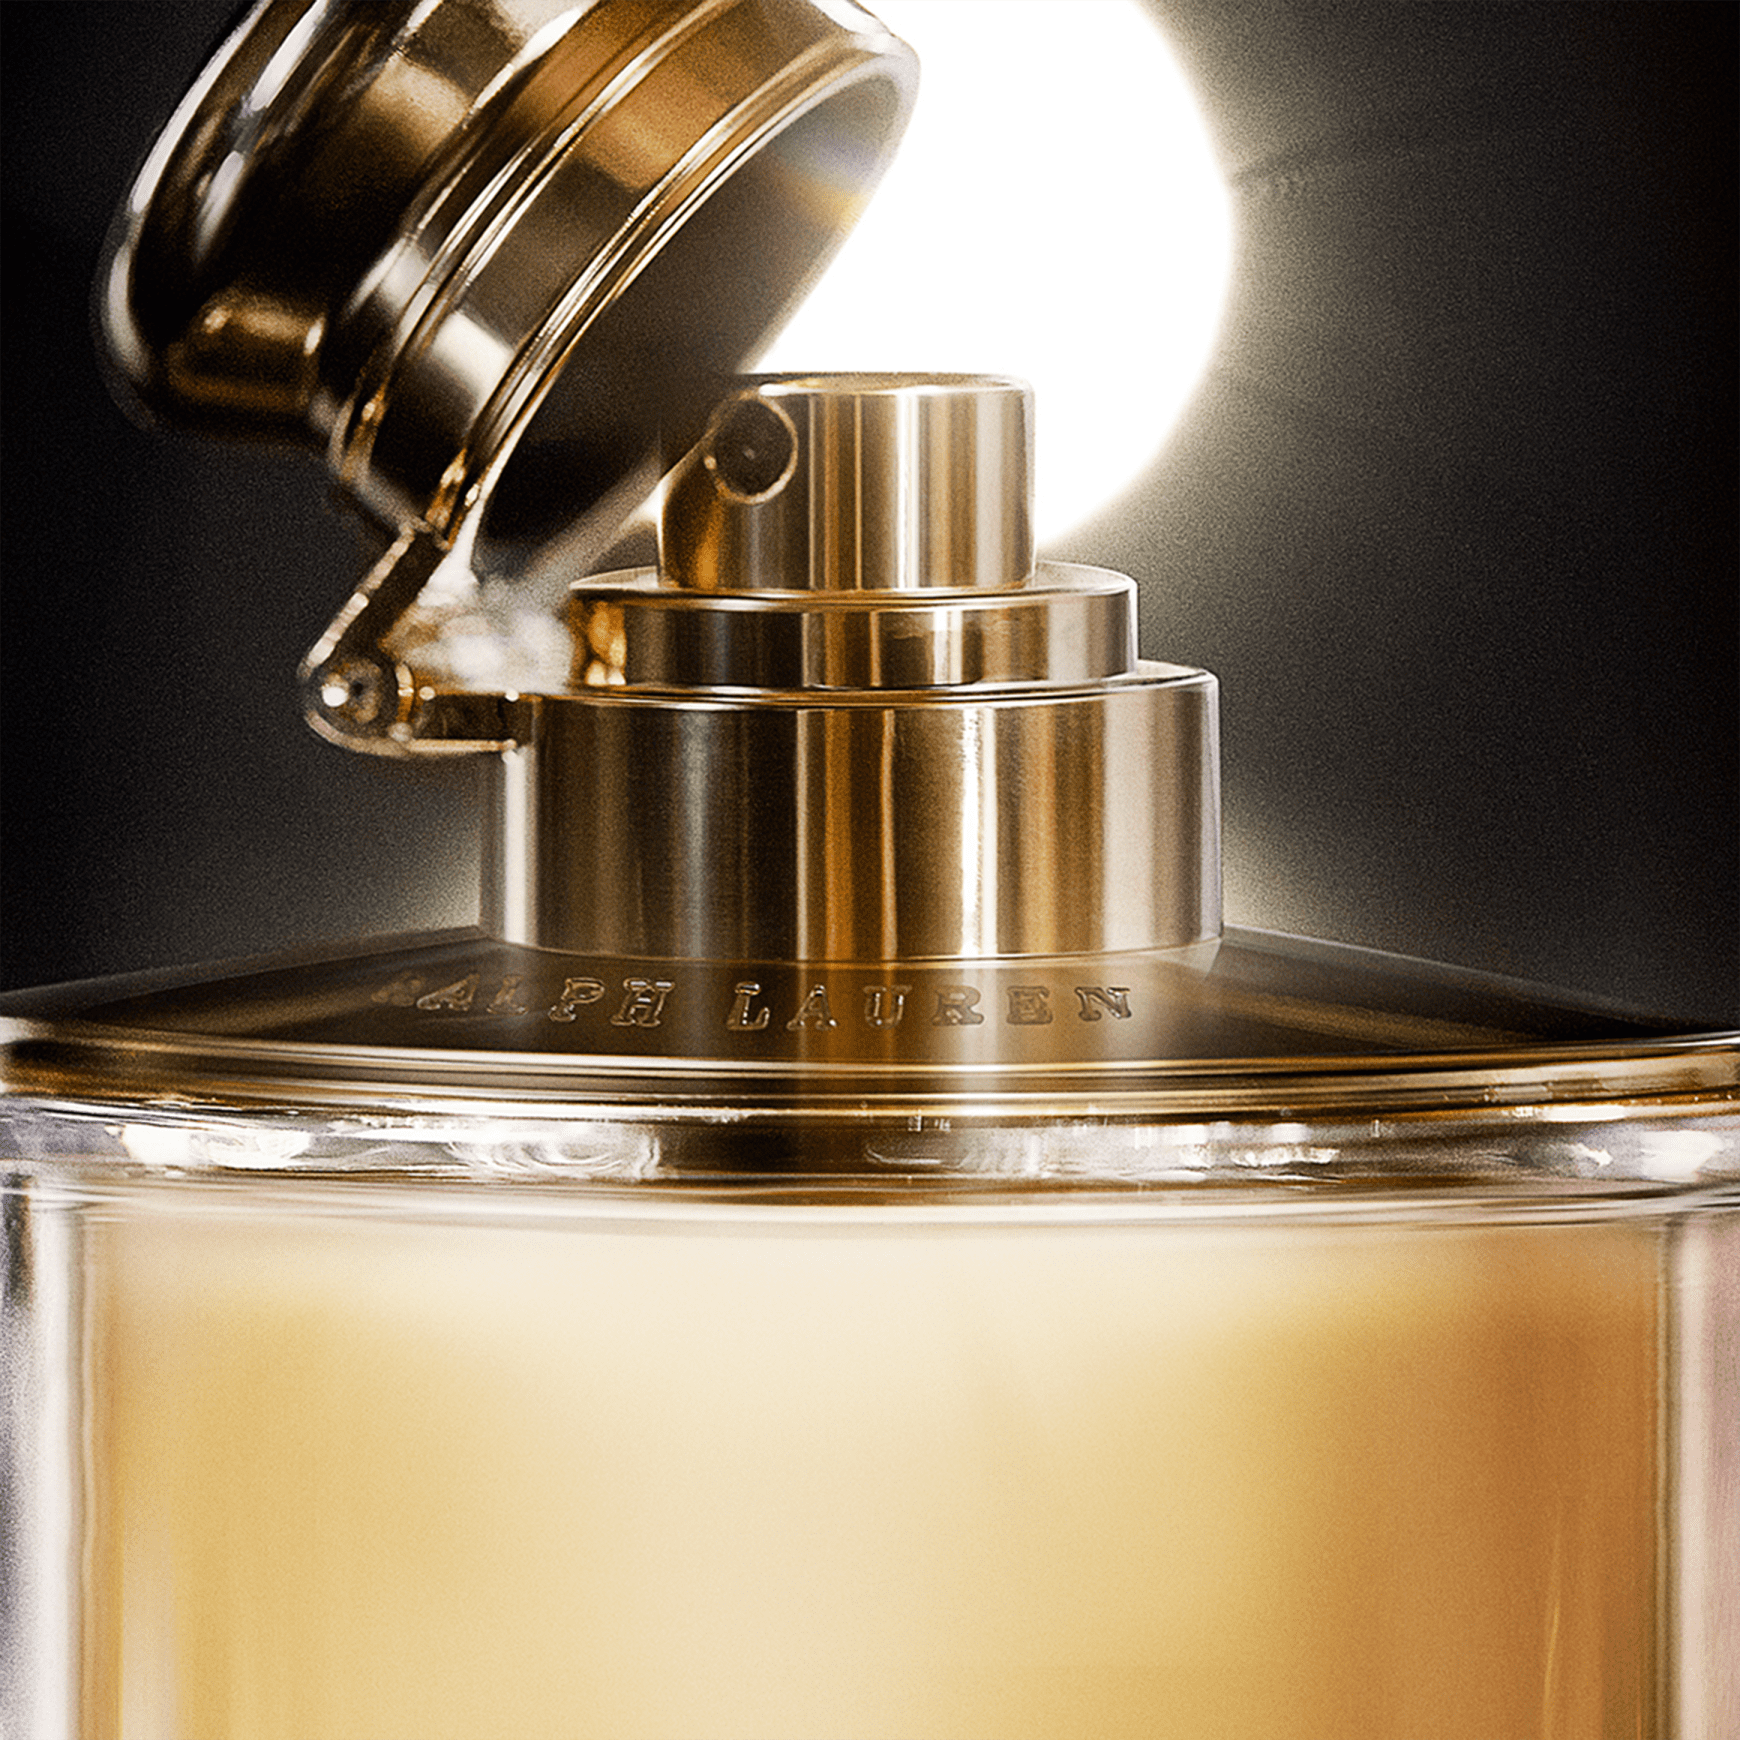 Woman Eau de Parfum / Ralph Lauren / Perfume Feminino - Golden Fragrâncias